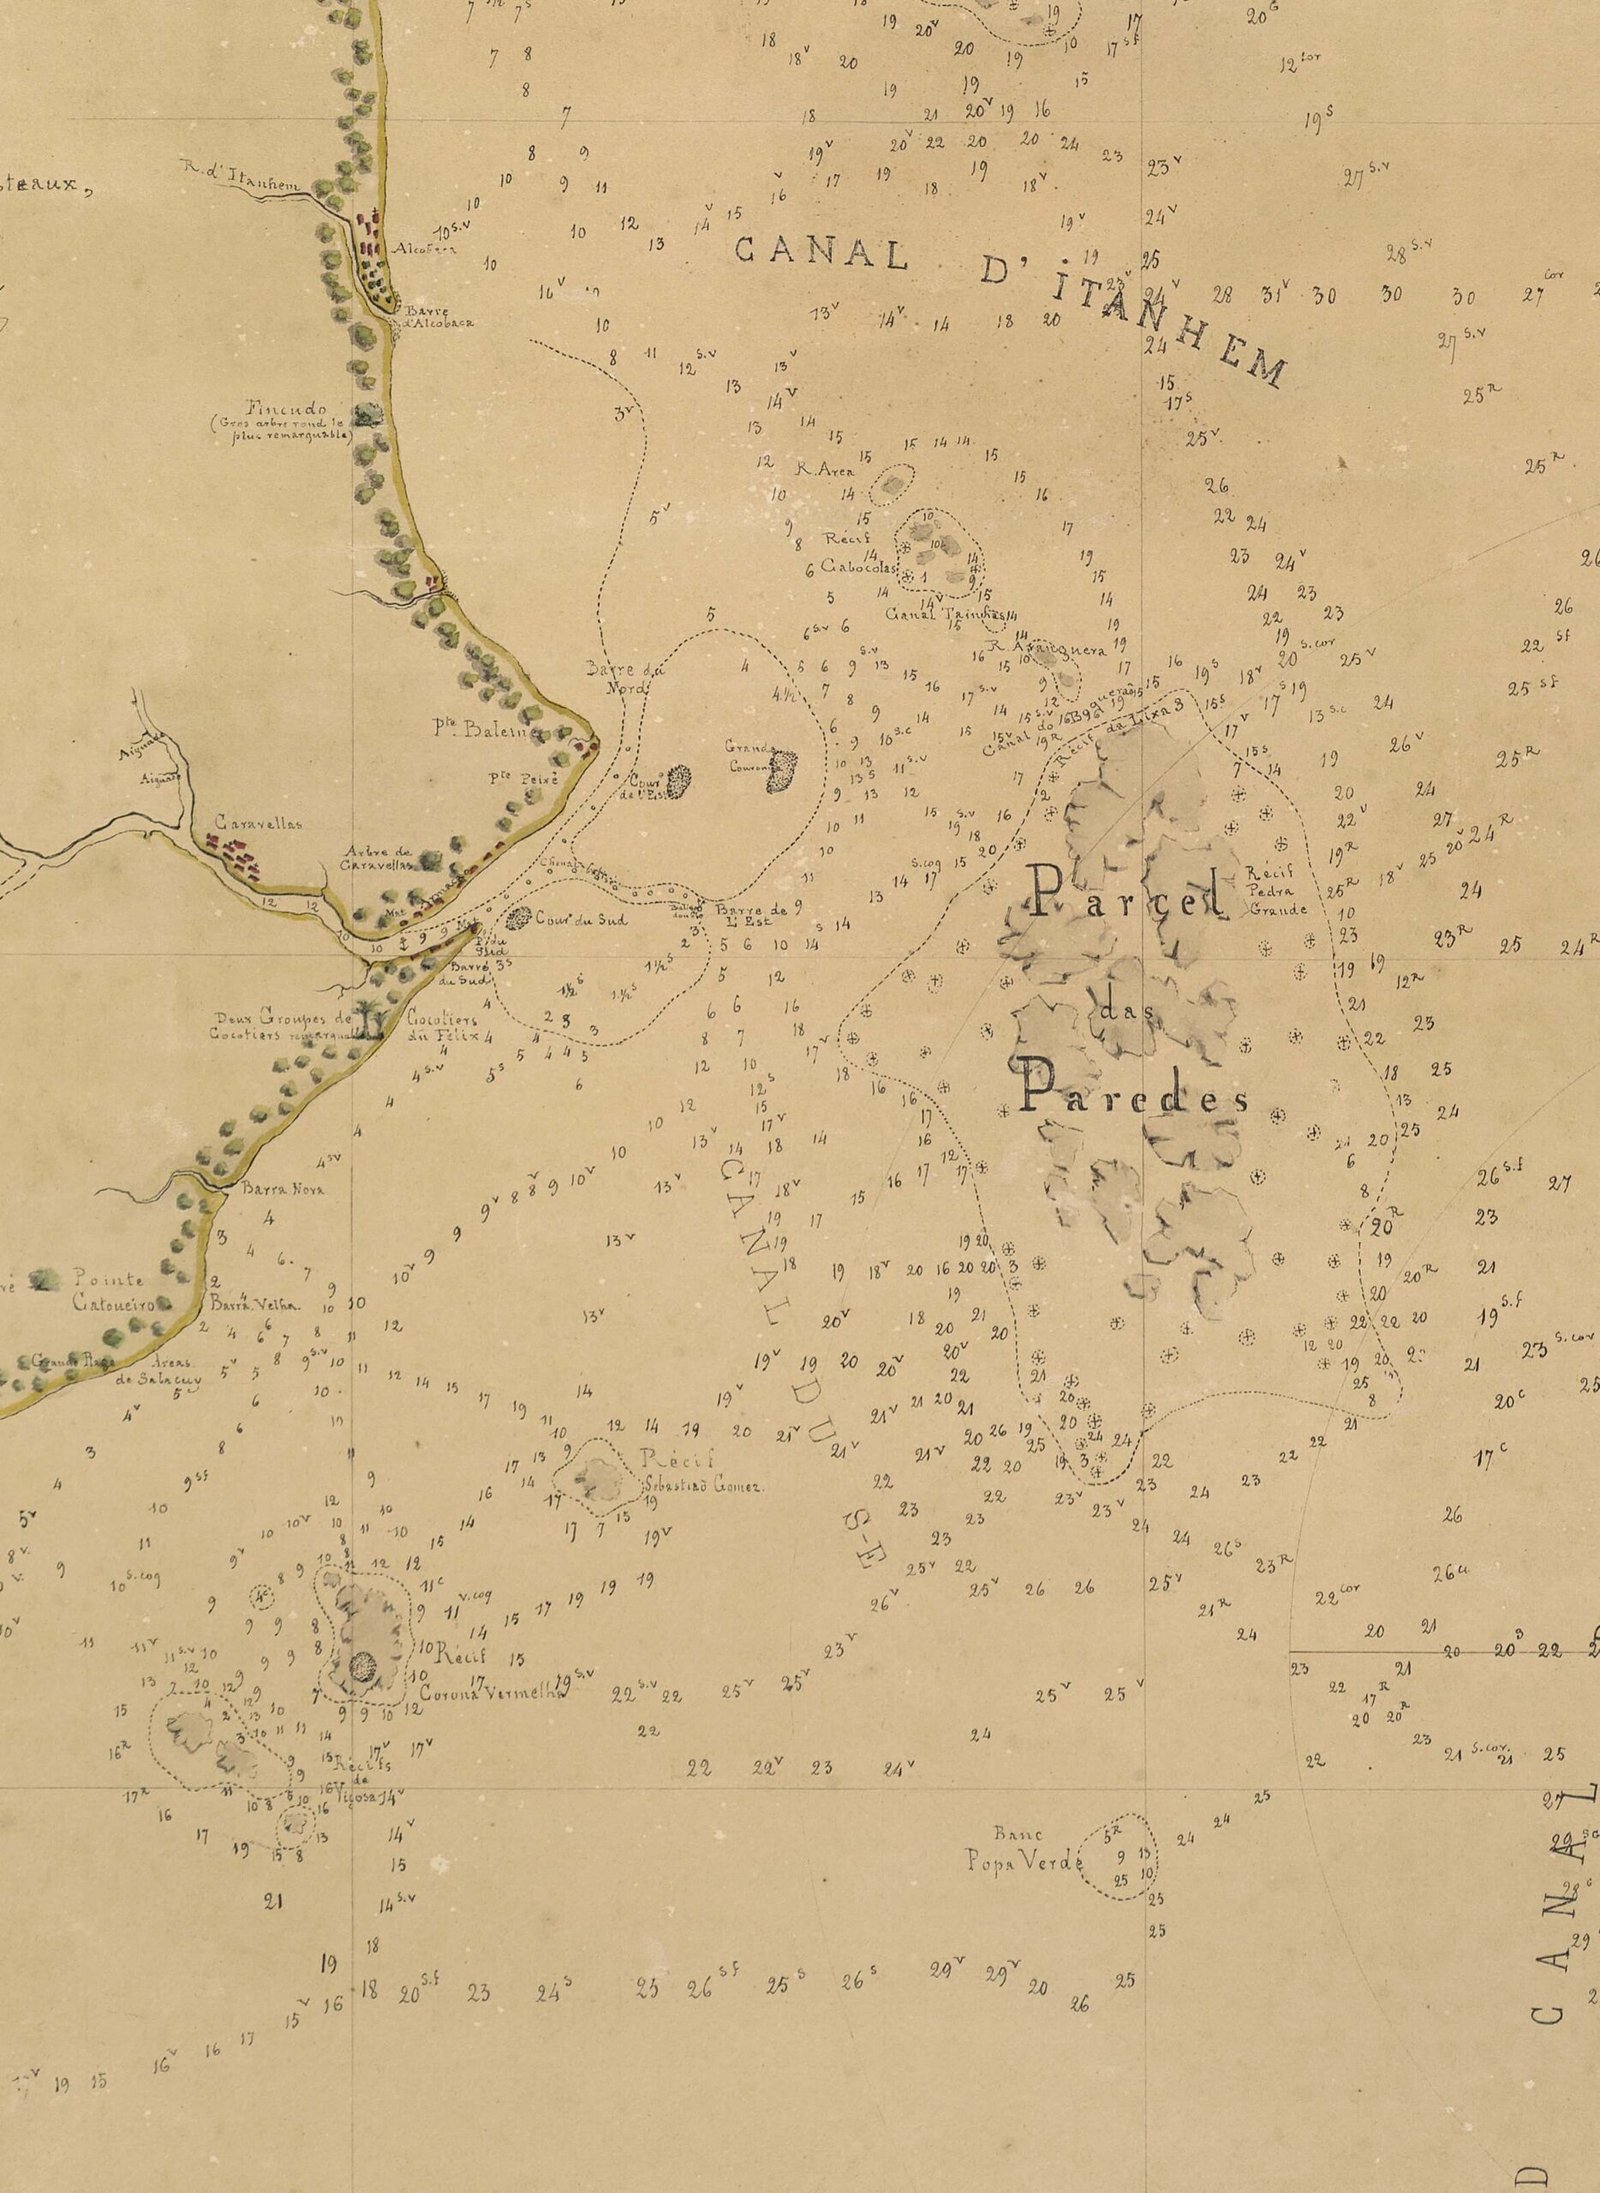 Mapa antigo em tom de sépia com o traço de parte da costa brasileira, muitas numerações e duas inscrições destacadas no mar: CANAL D'ITANHEM e Parcel das Paredes